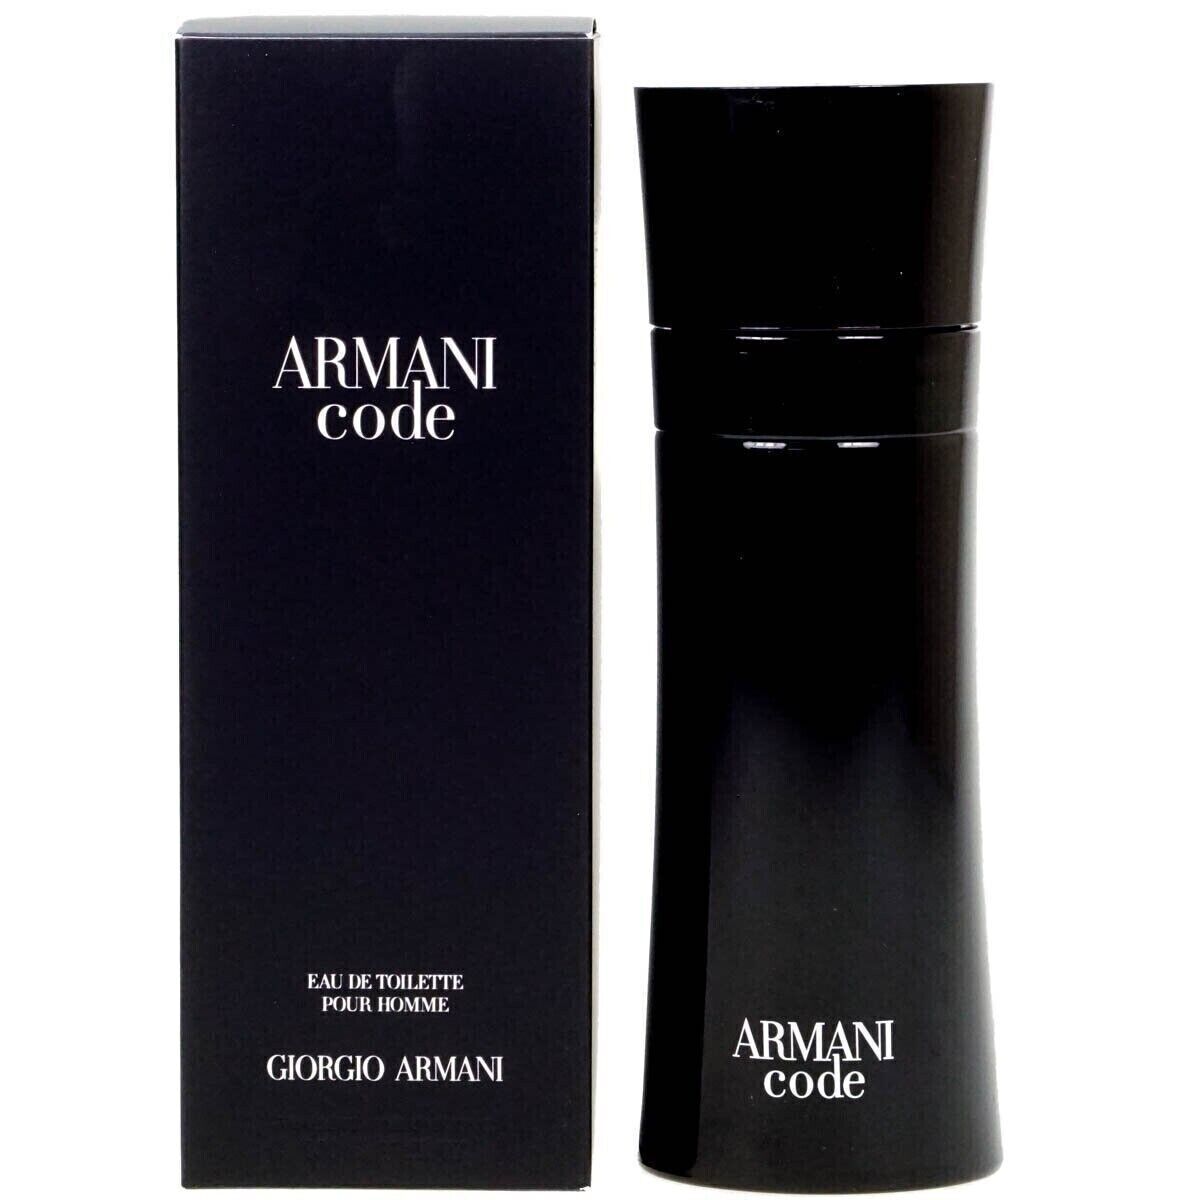 ARMANI CODE by Giorgio Armani for Men cologne edt 4.2 oz NEW IN BOX sealed